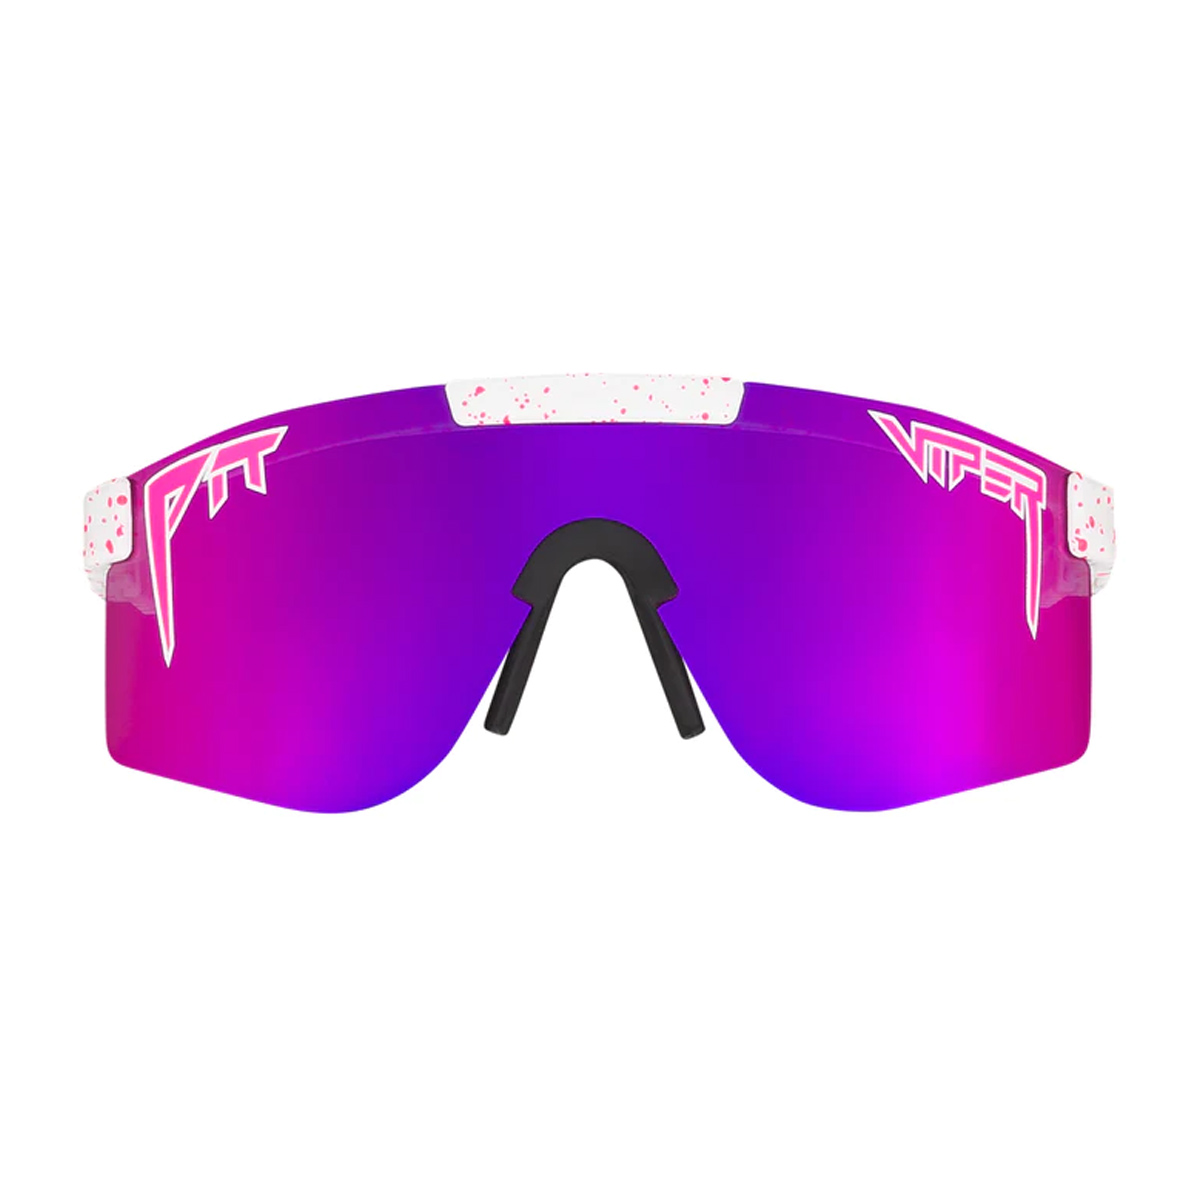 2er Pack X-CRUZE® Fahrradbrille Fahrrad Sonnenbrille Brille Herren Damen schwarz 